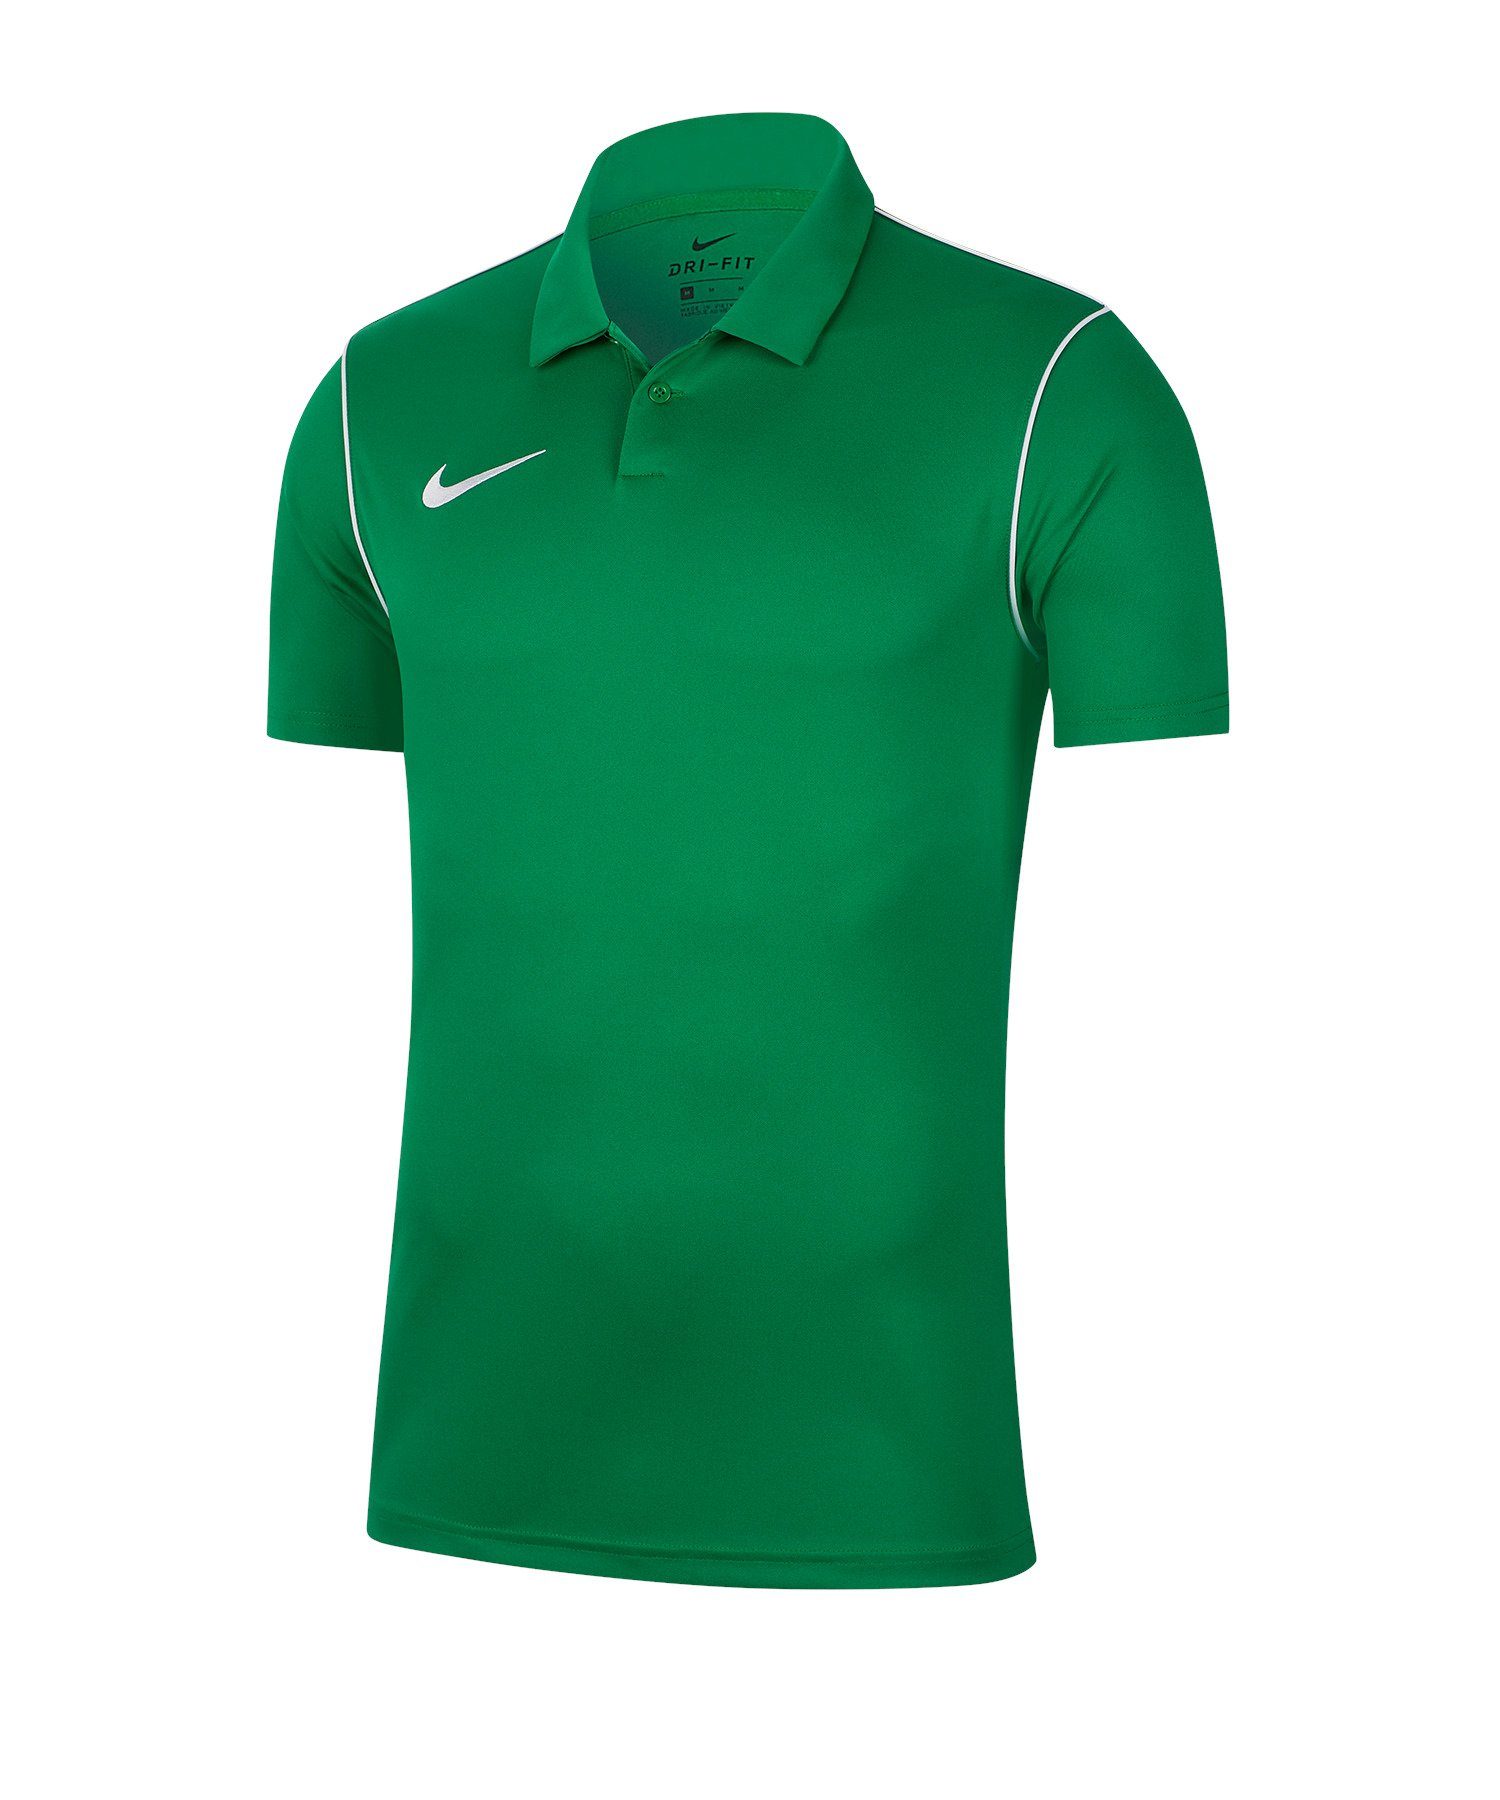 Nike gruen 20 T-Shirt Poloshirt default Park